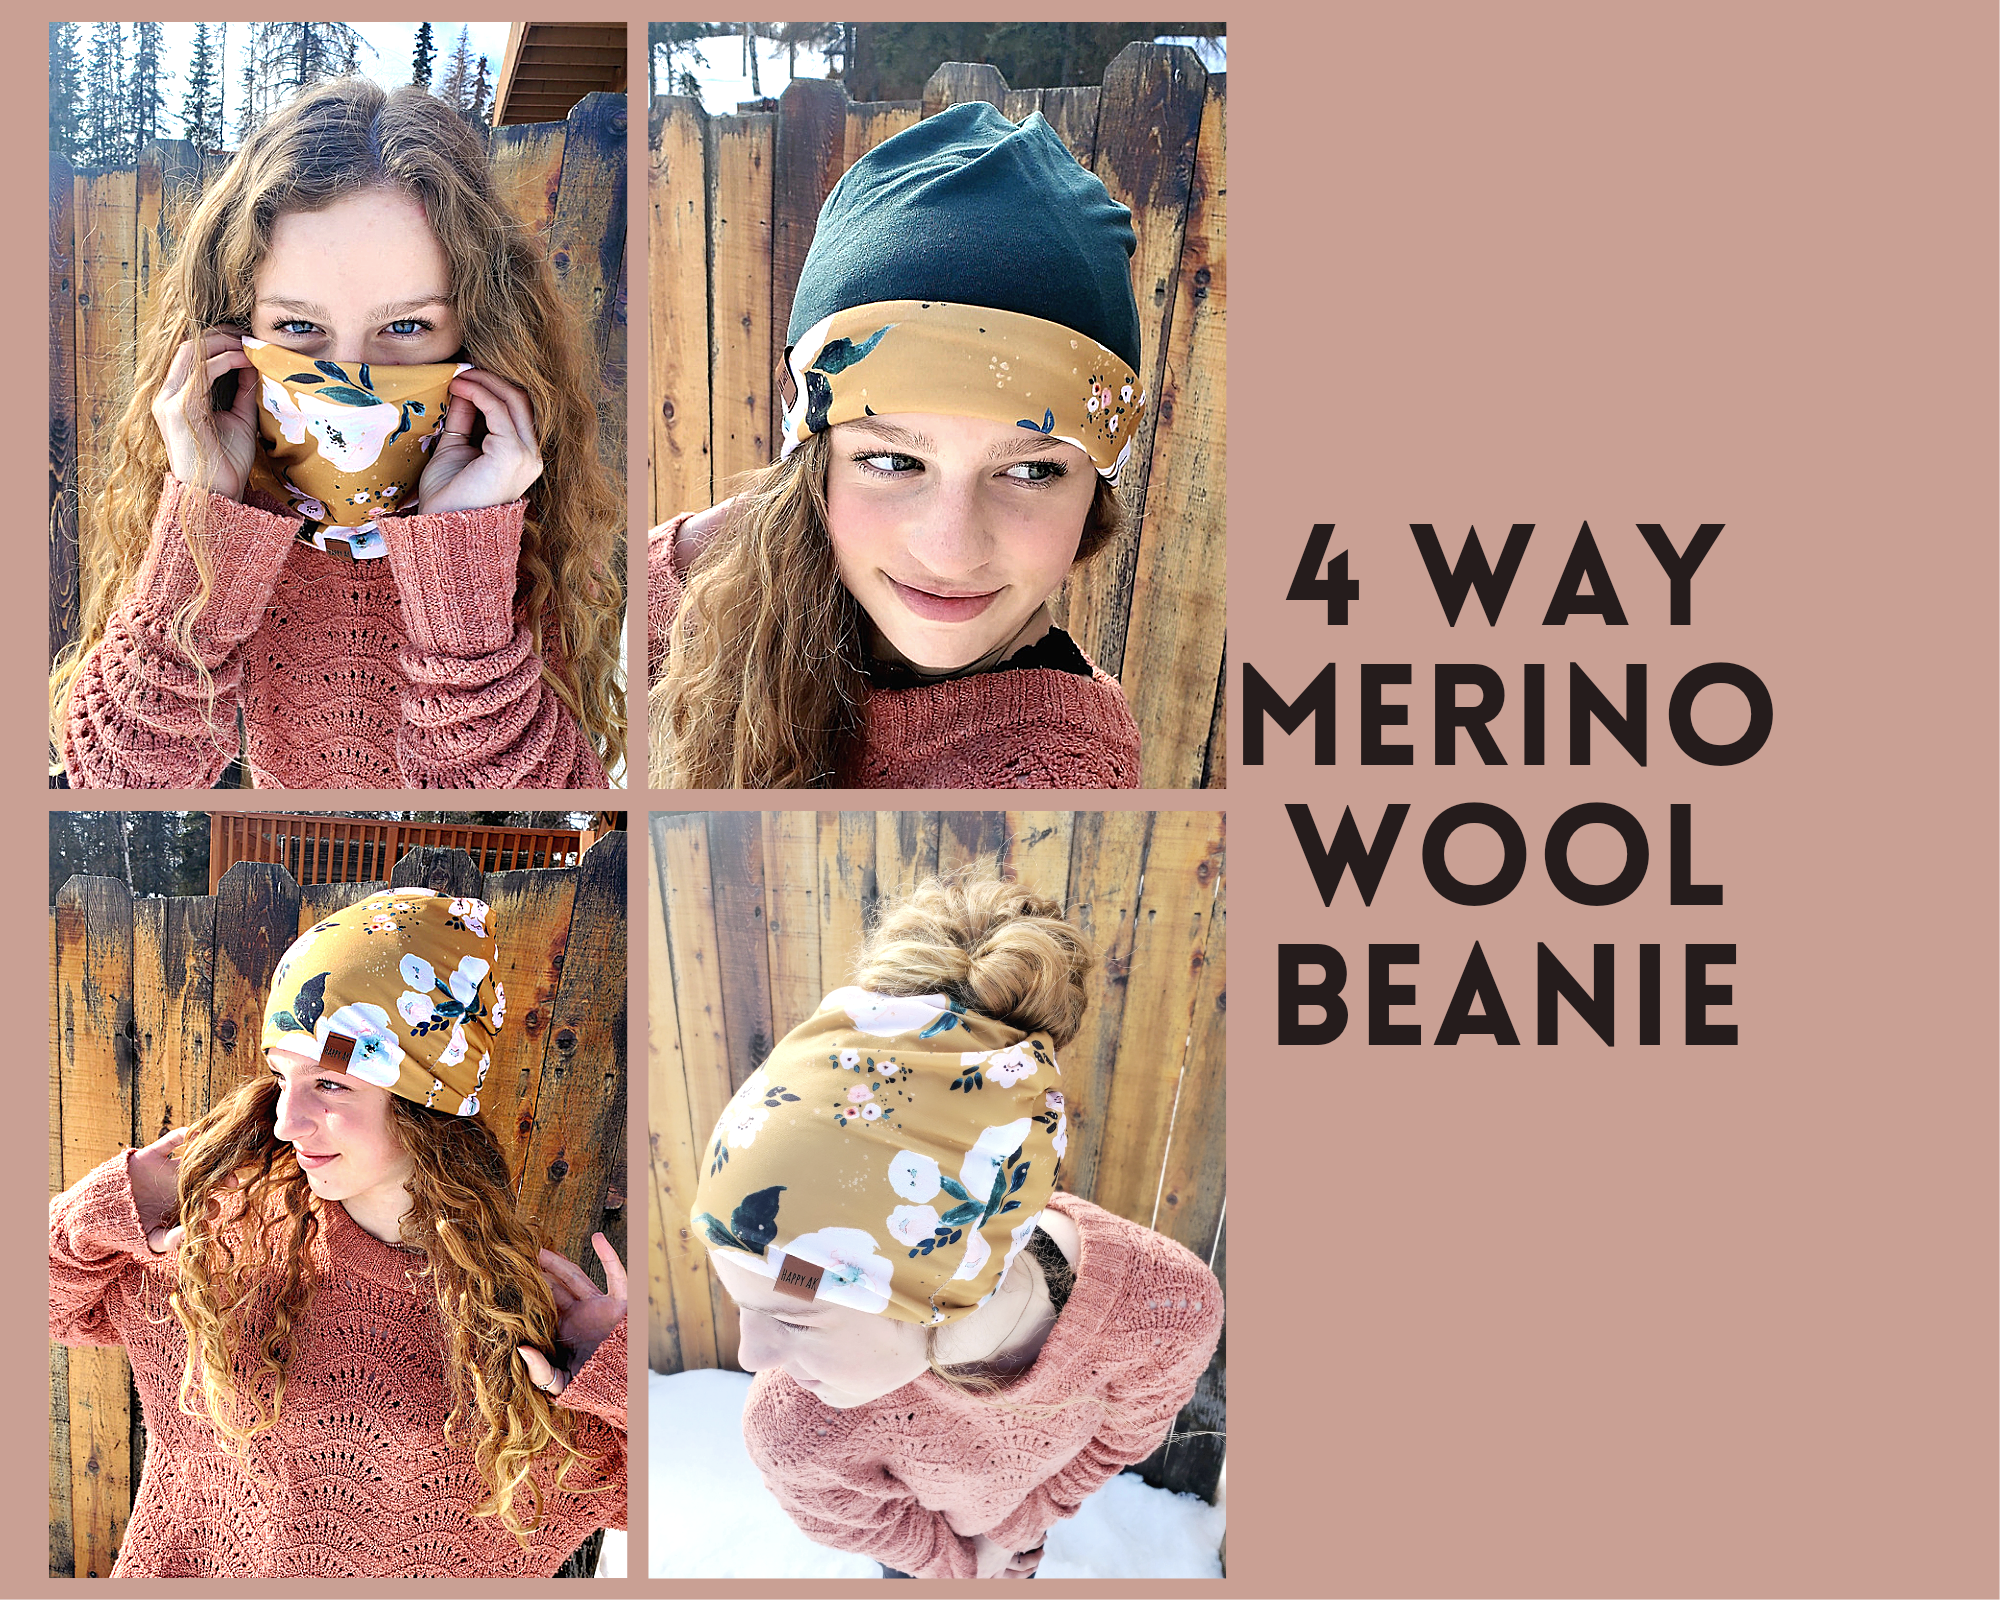 4 Way Merino Wool Beanies